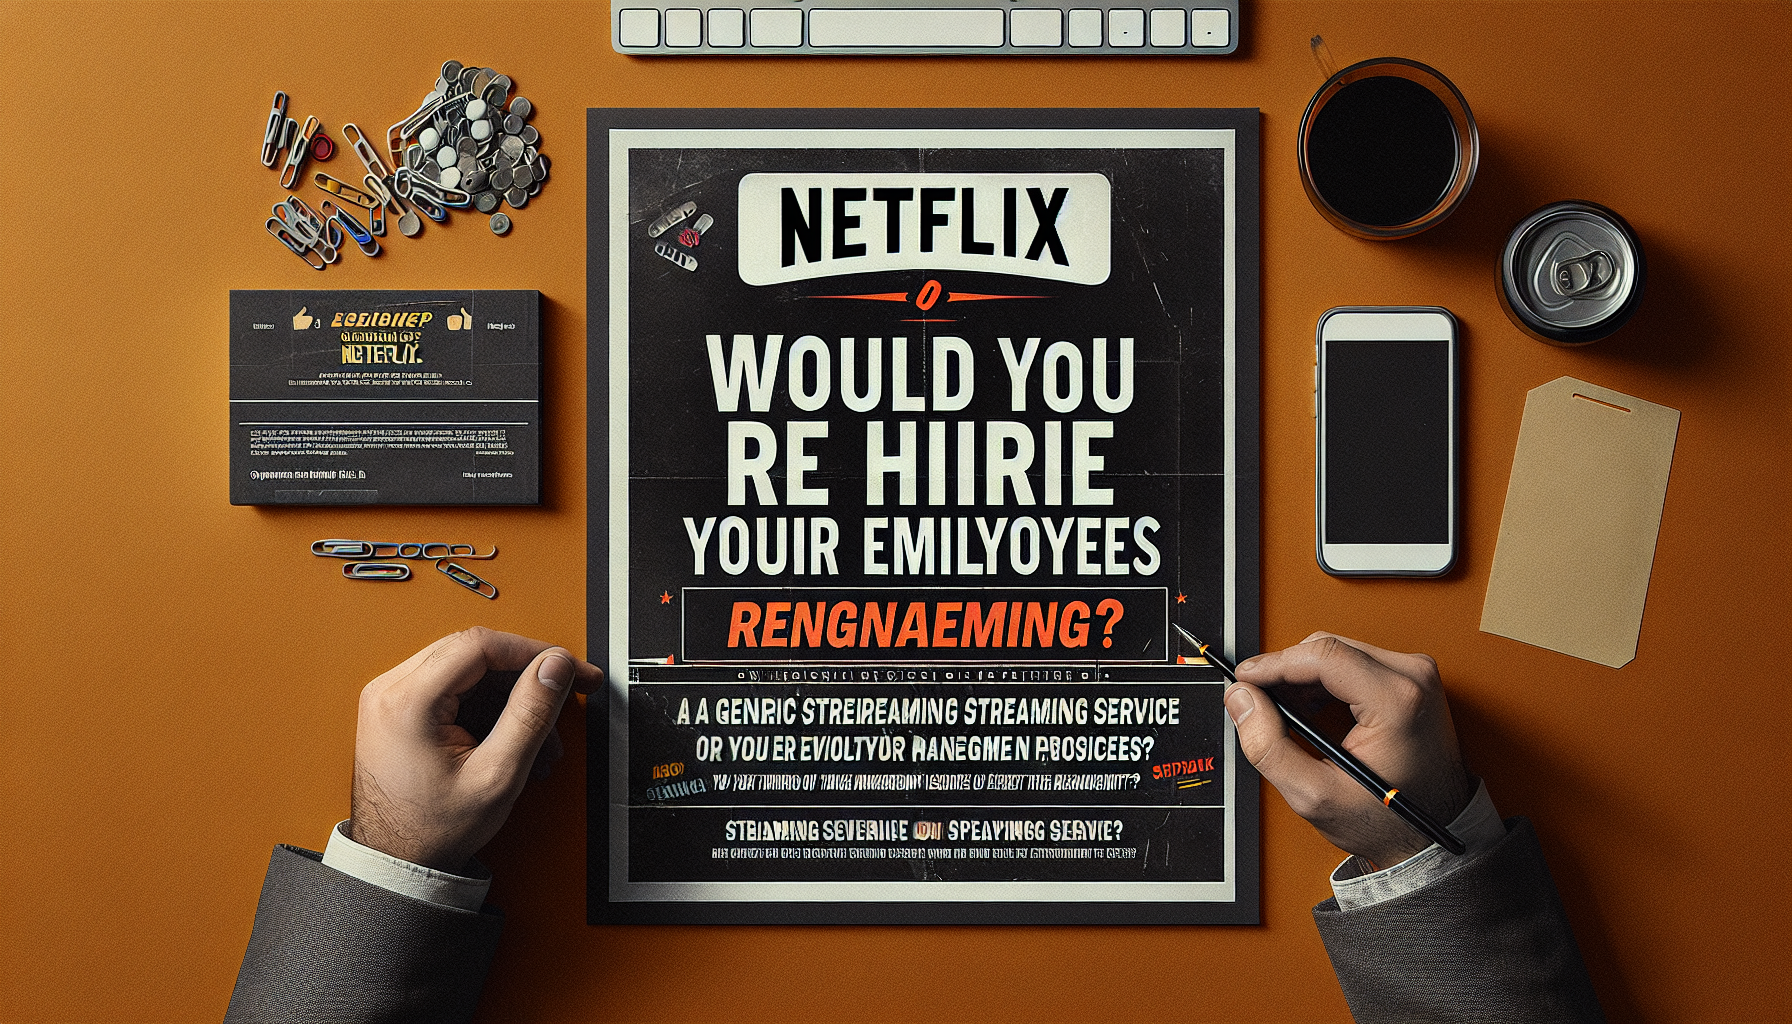 Netflix anima a los directivos a considerar la posibilidad de volver a contratar a sus empleados y a considerar despedirlos si la respuesta es no. Obtenga más información sobre su enfoque en la gestión de empleados.